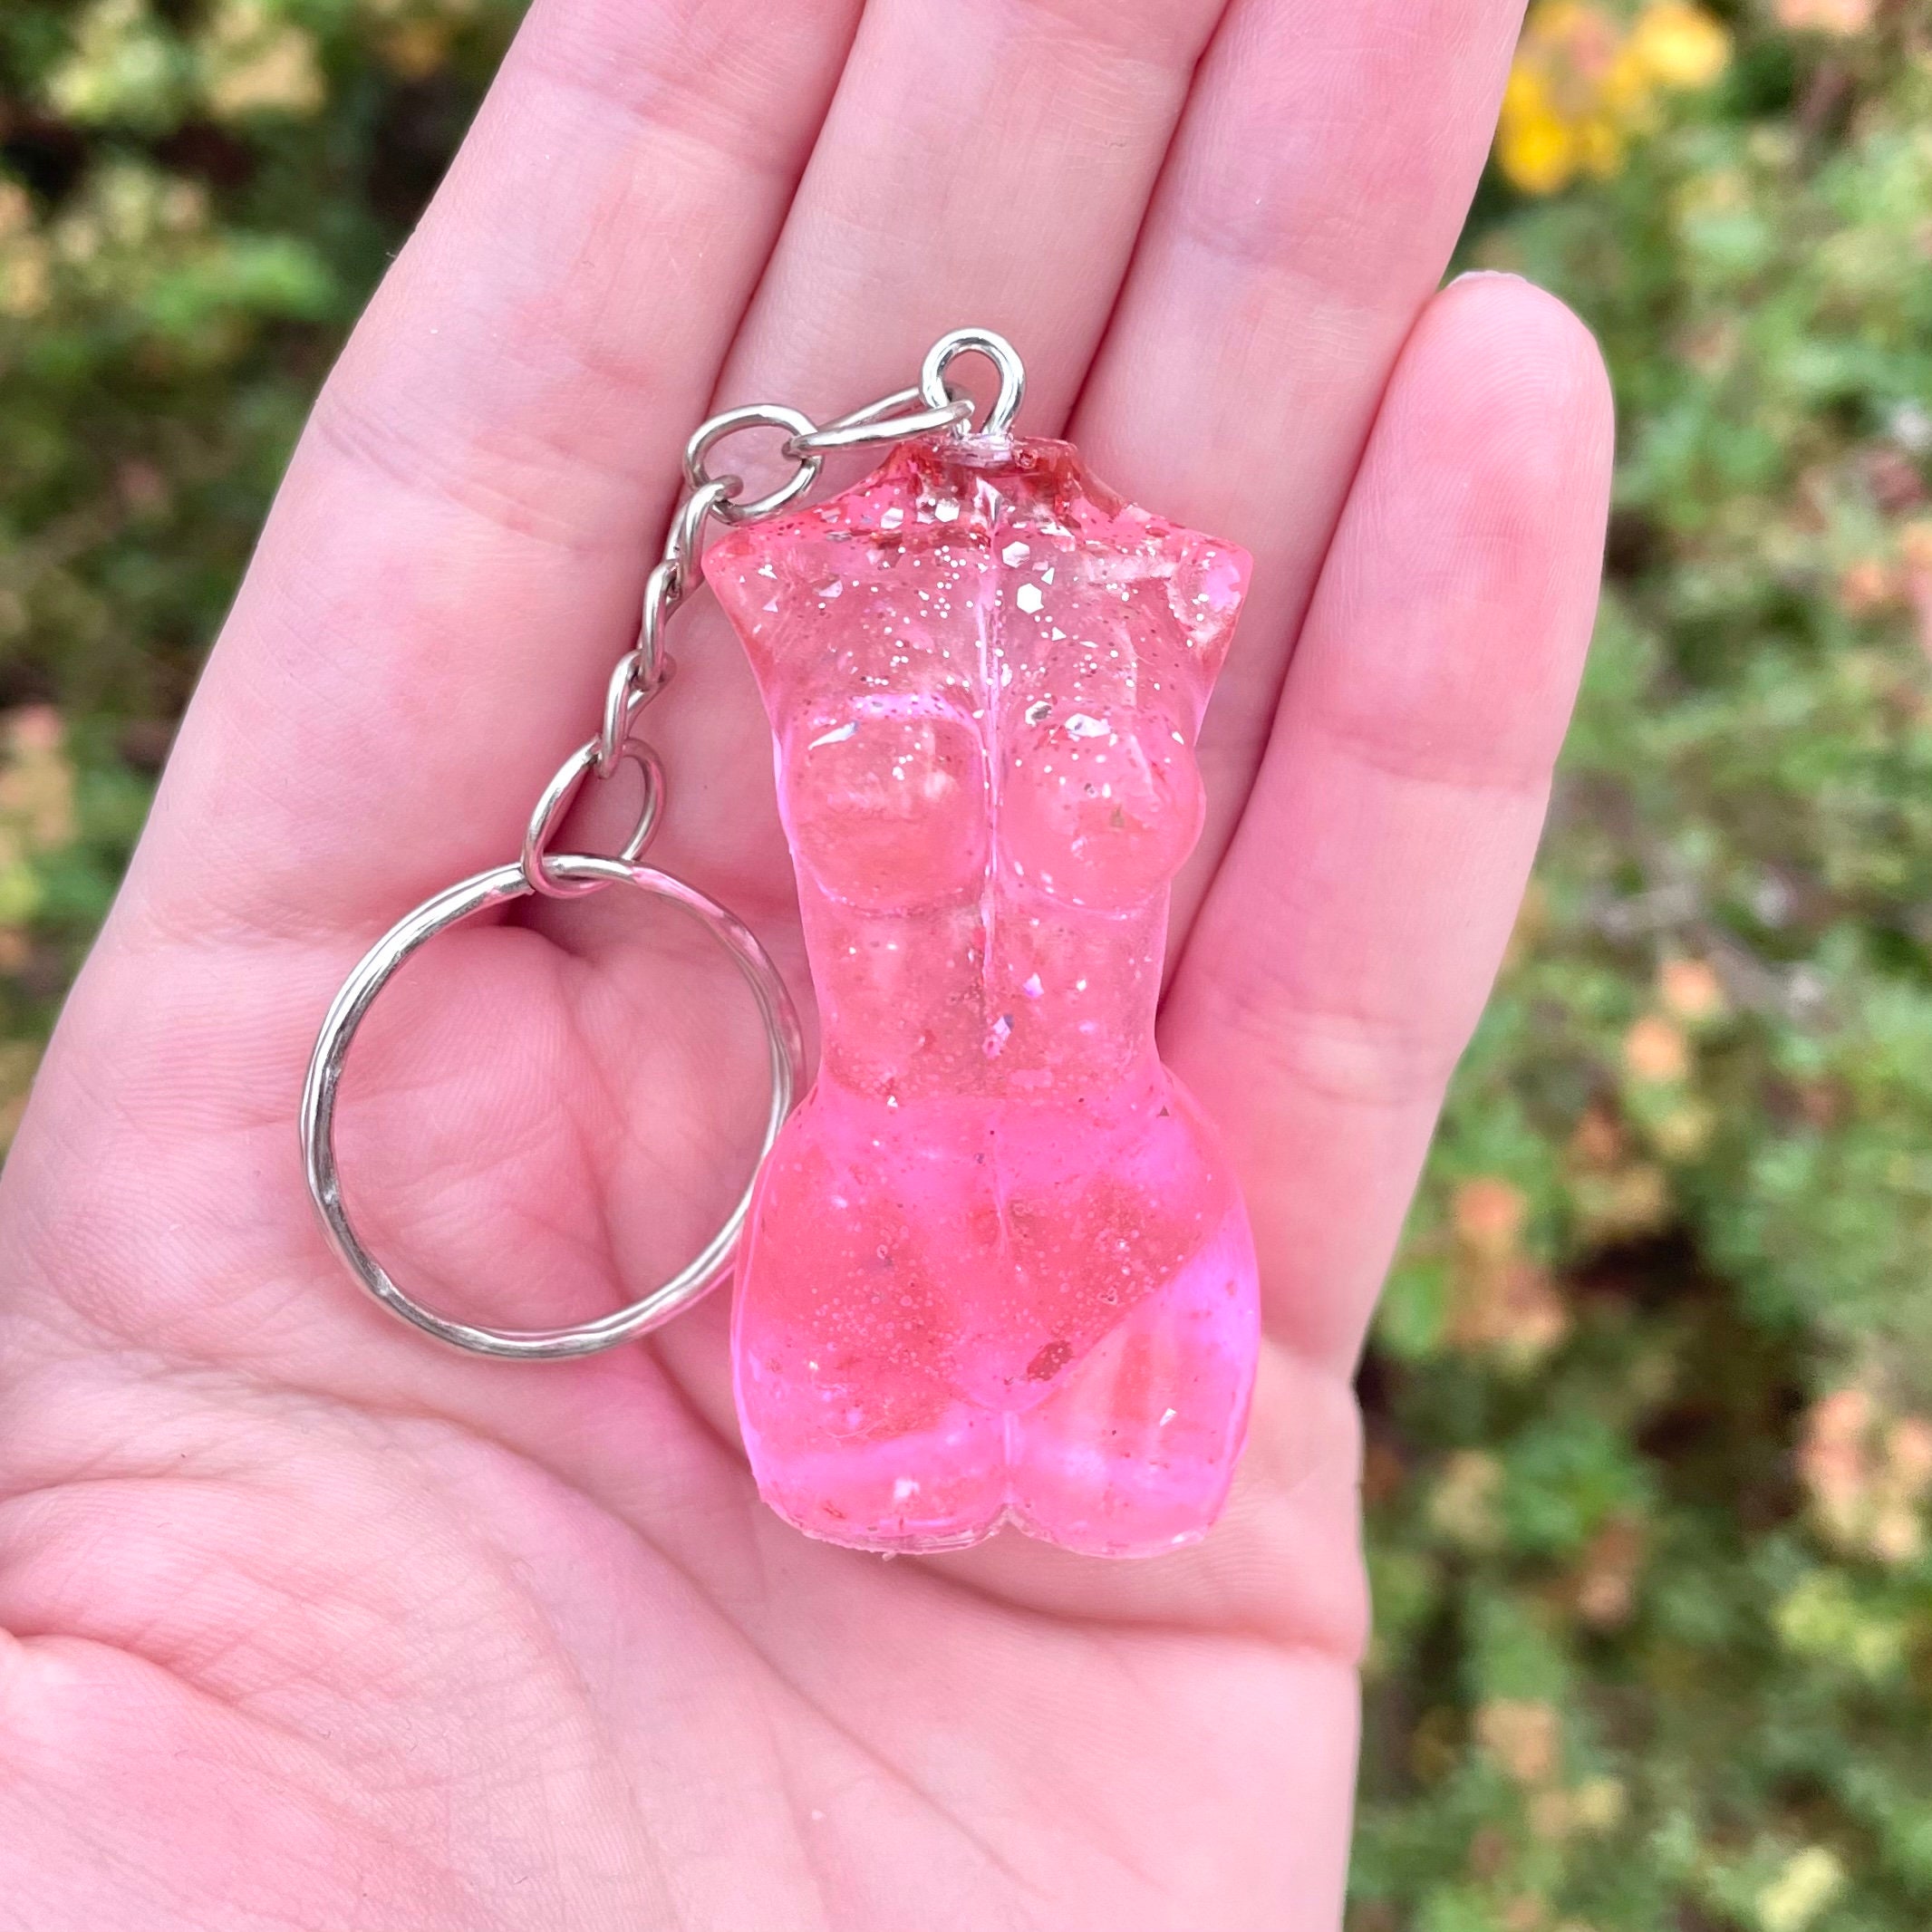 Goddess keychain/Keyring, Hot pink glitter